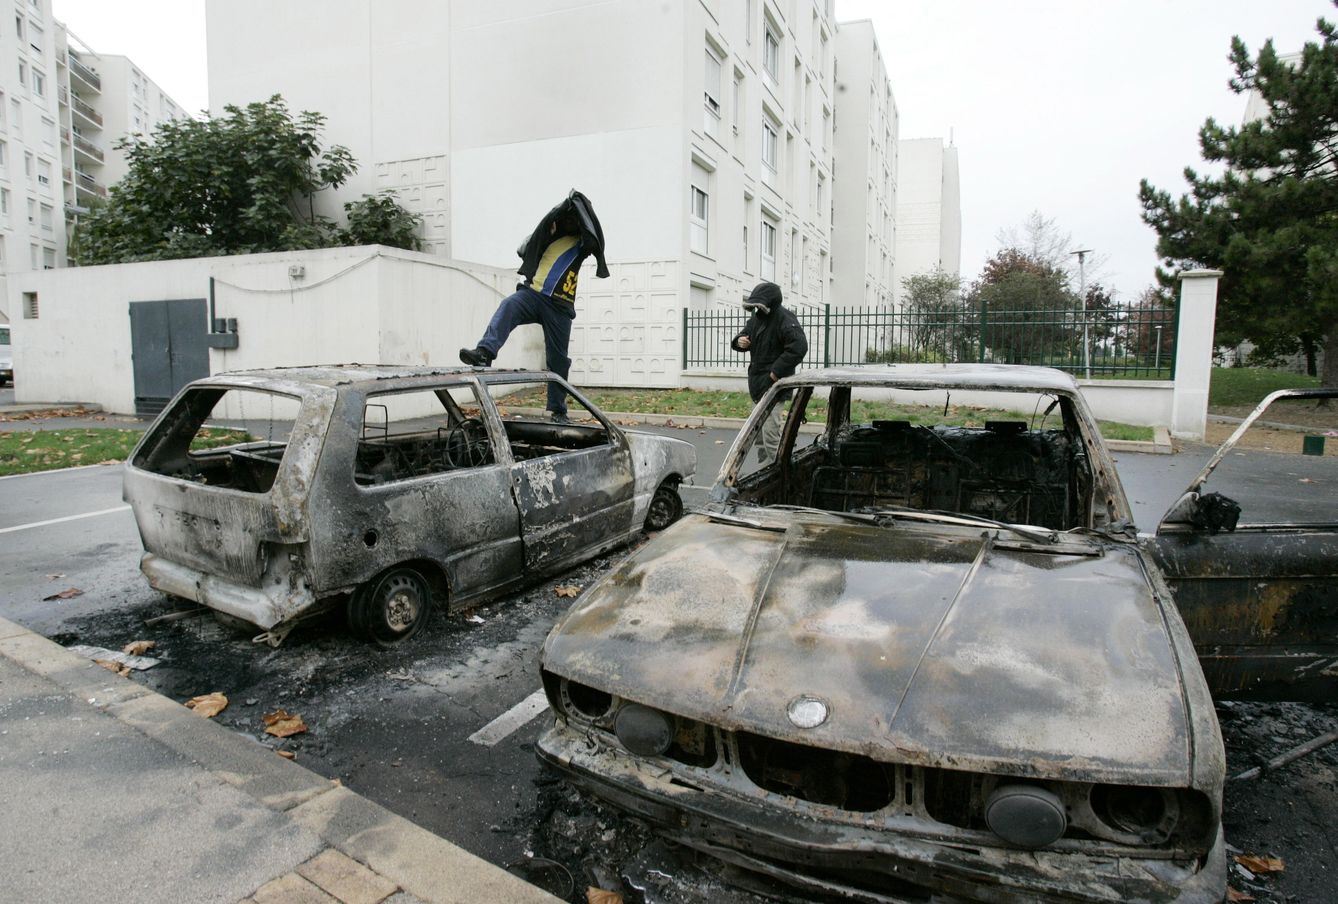 Jóvenes caminan sobre vehículos quemados en el suburbio parisino de Sevran, en noviembre de 2005. (Reuters)